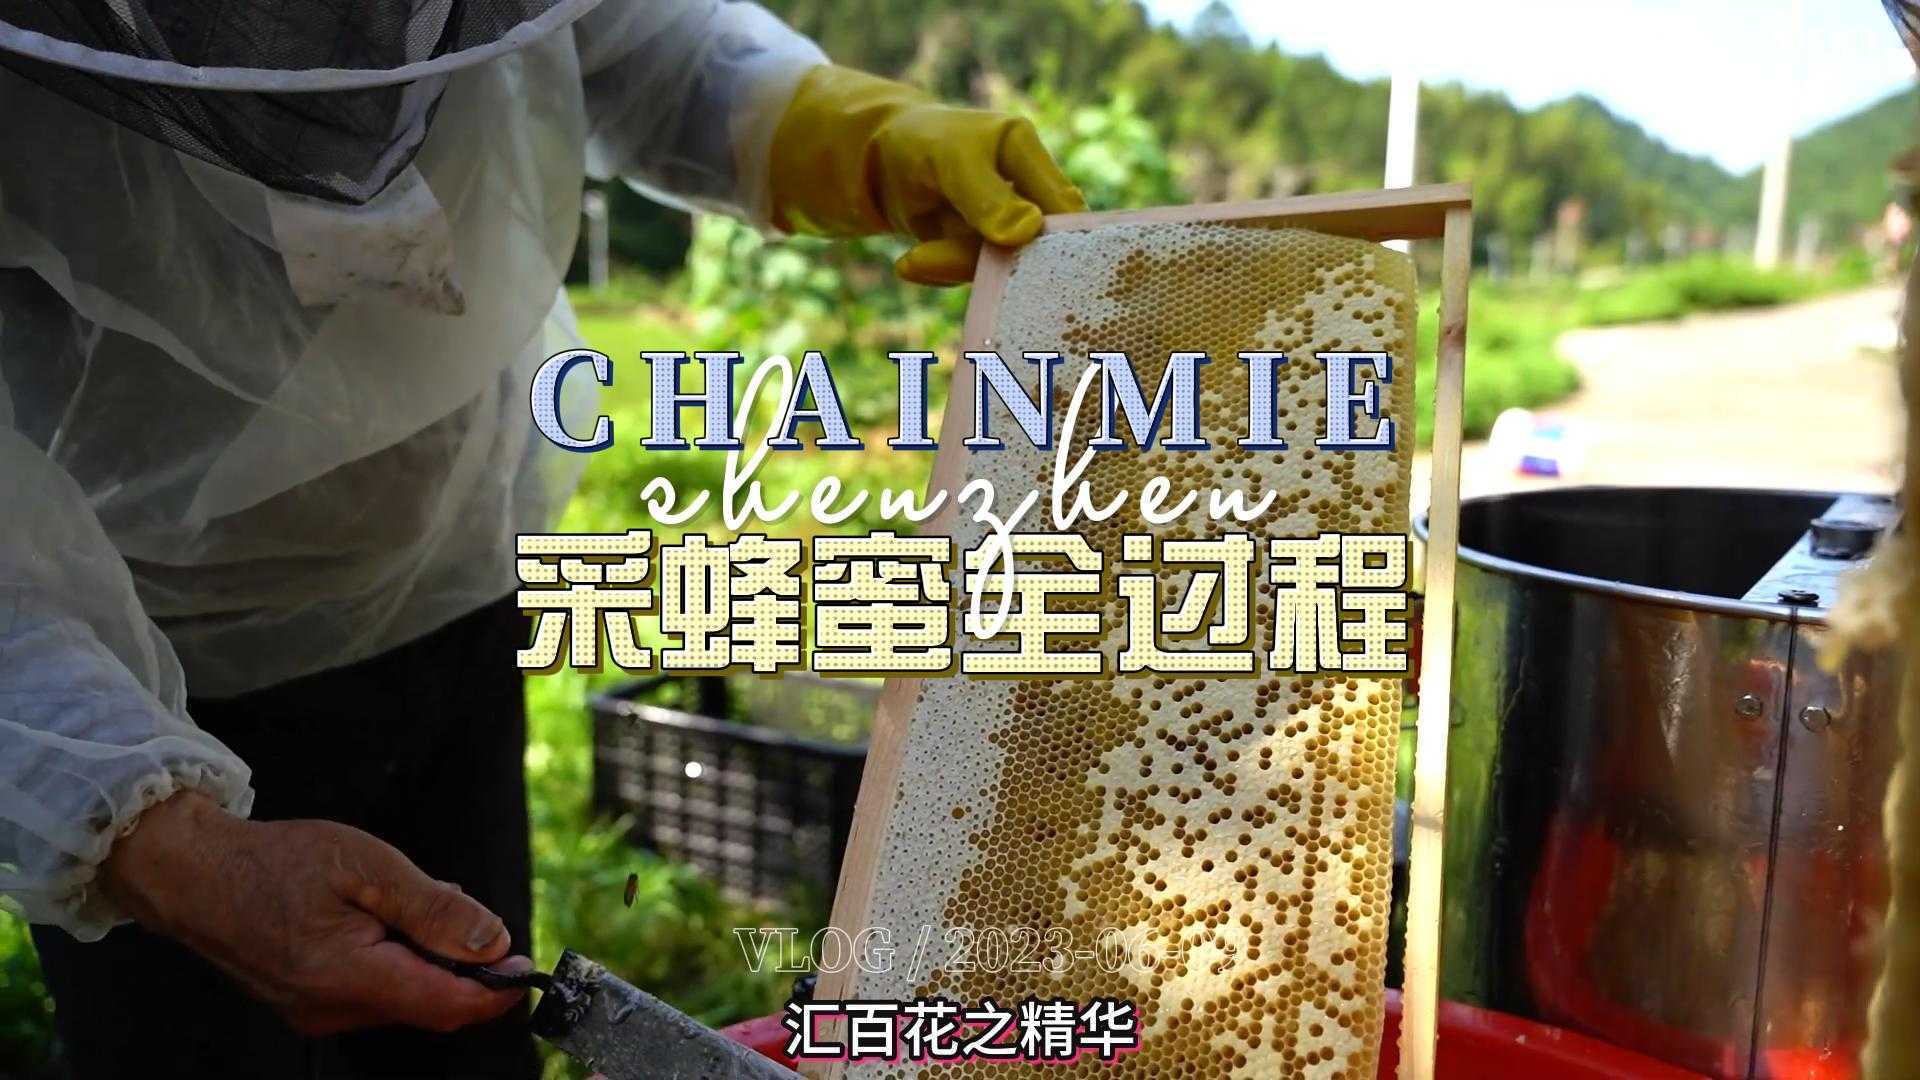 助农拍摄采蜂蜜全过程